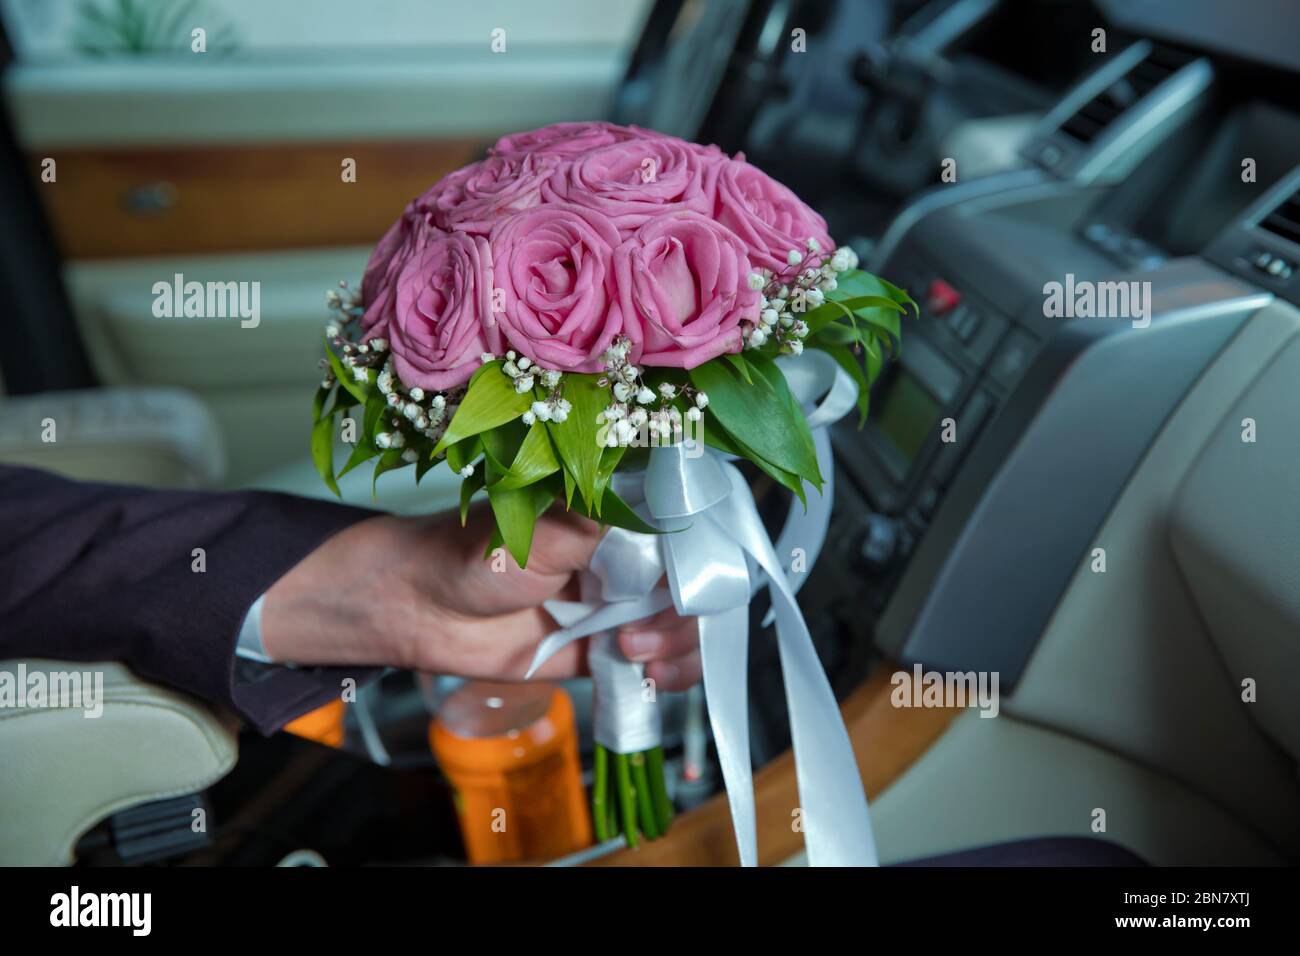 Frau mit Verlobungsblumen, rosa Rosen im Auto. Der Bräutigam hielt einen  Strauß rosa Blumen im Auto Stockfotografie - Alamy